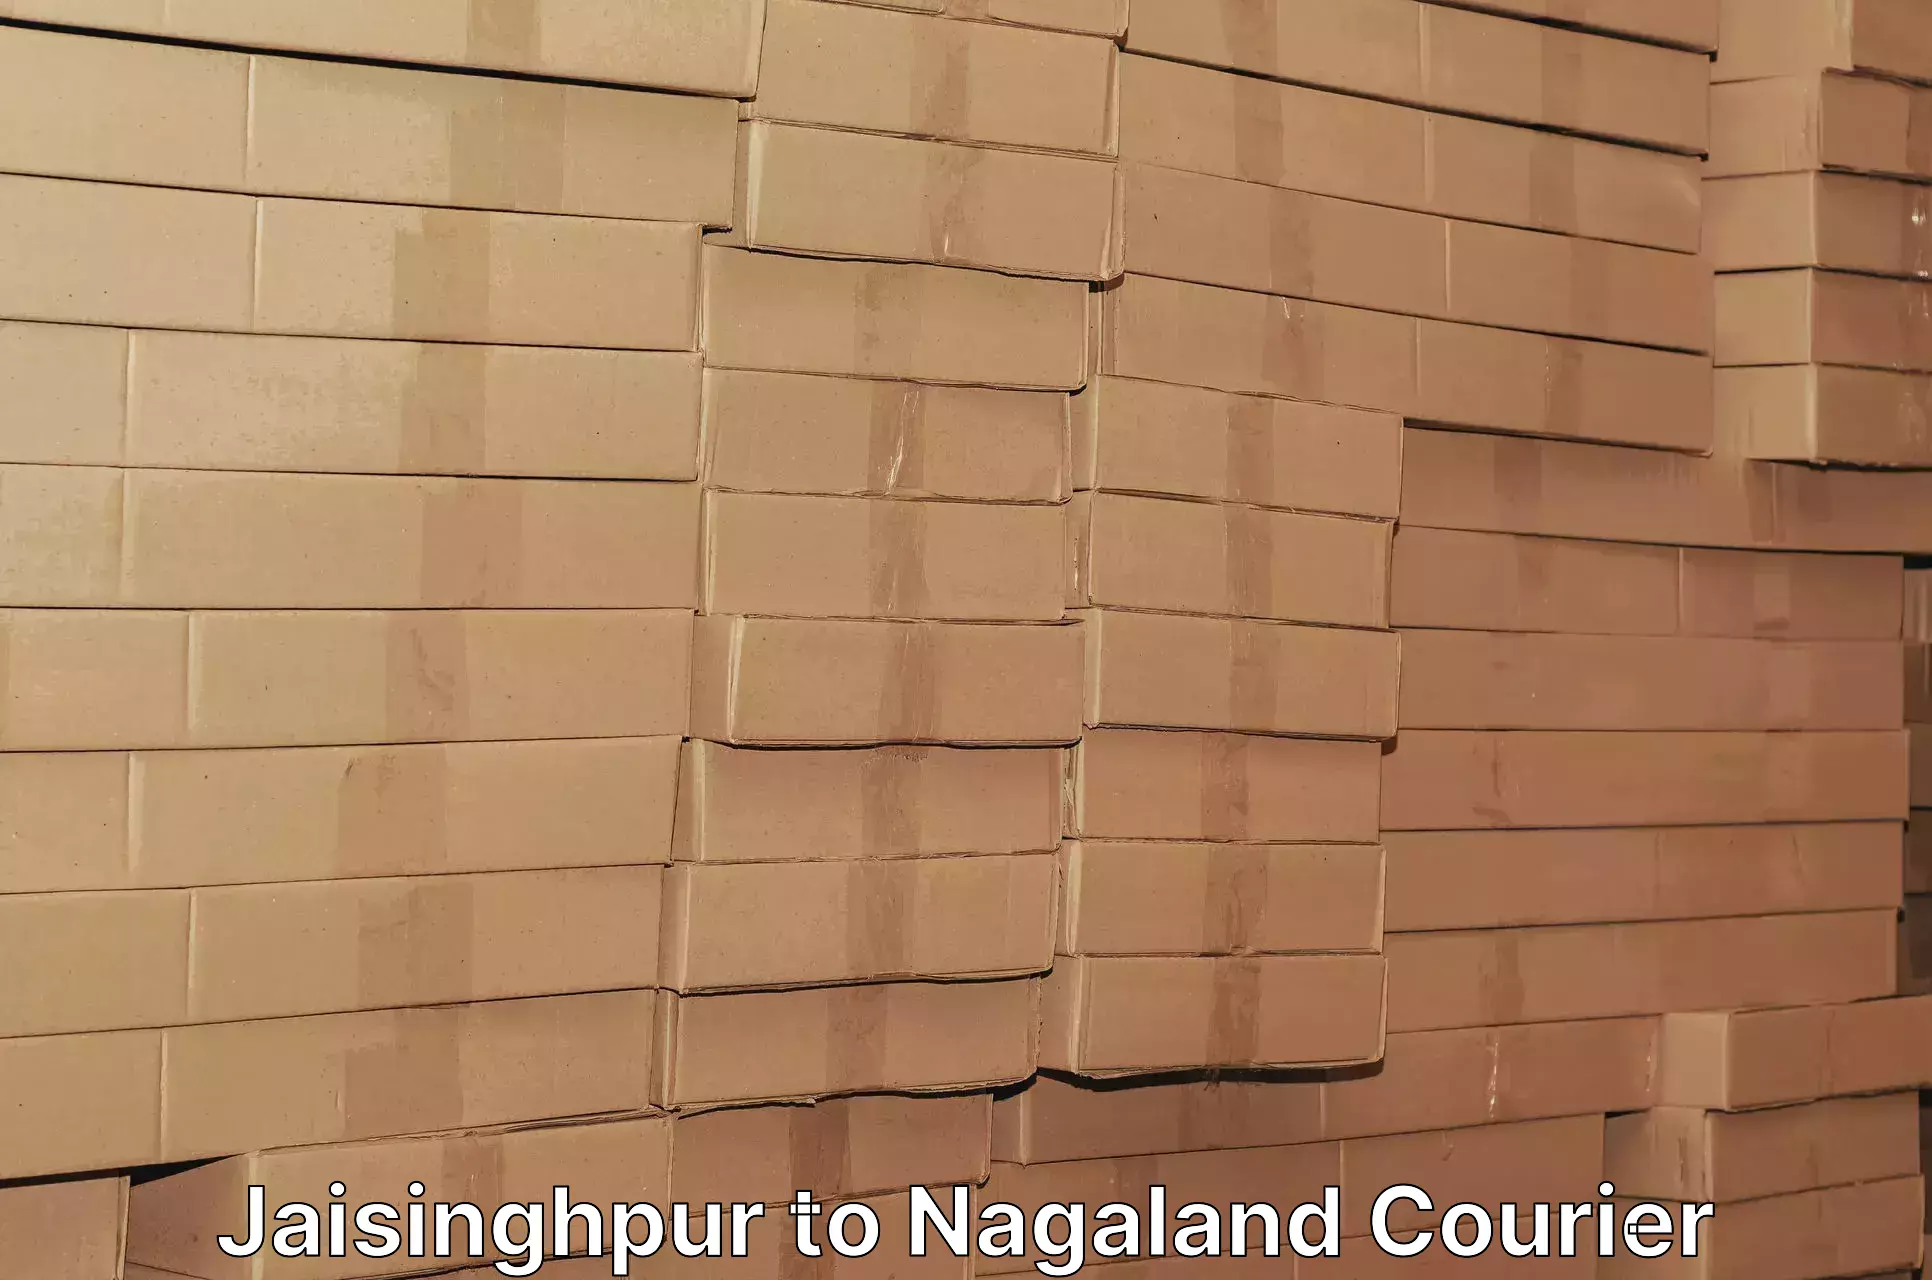 Special handling courier Jaisinghpur to Nagaland